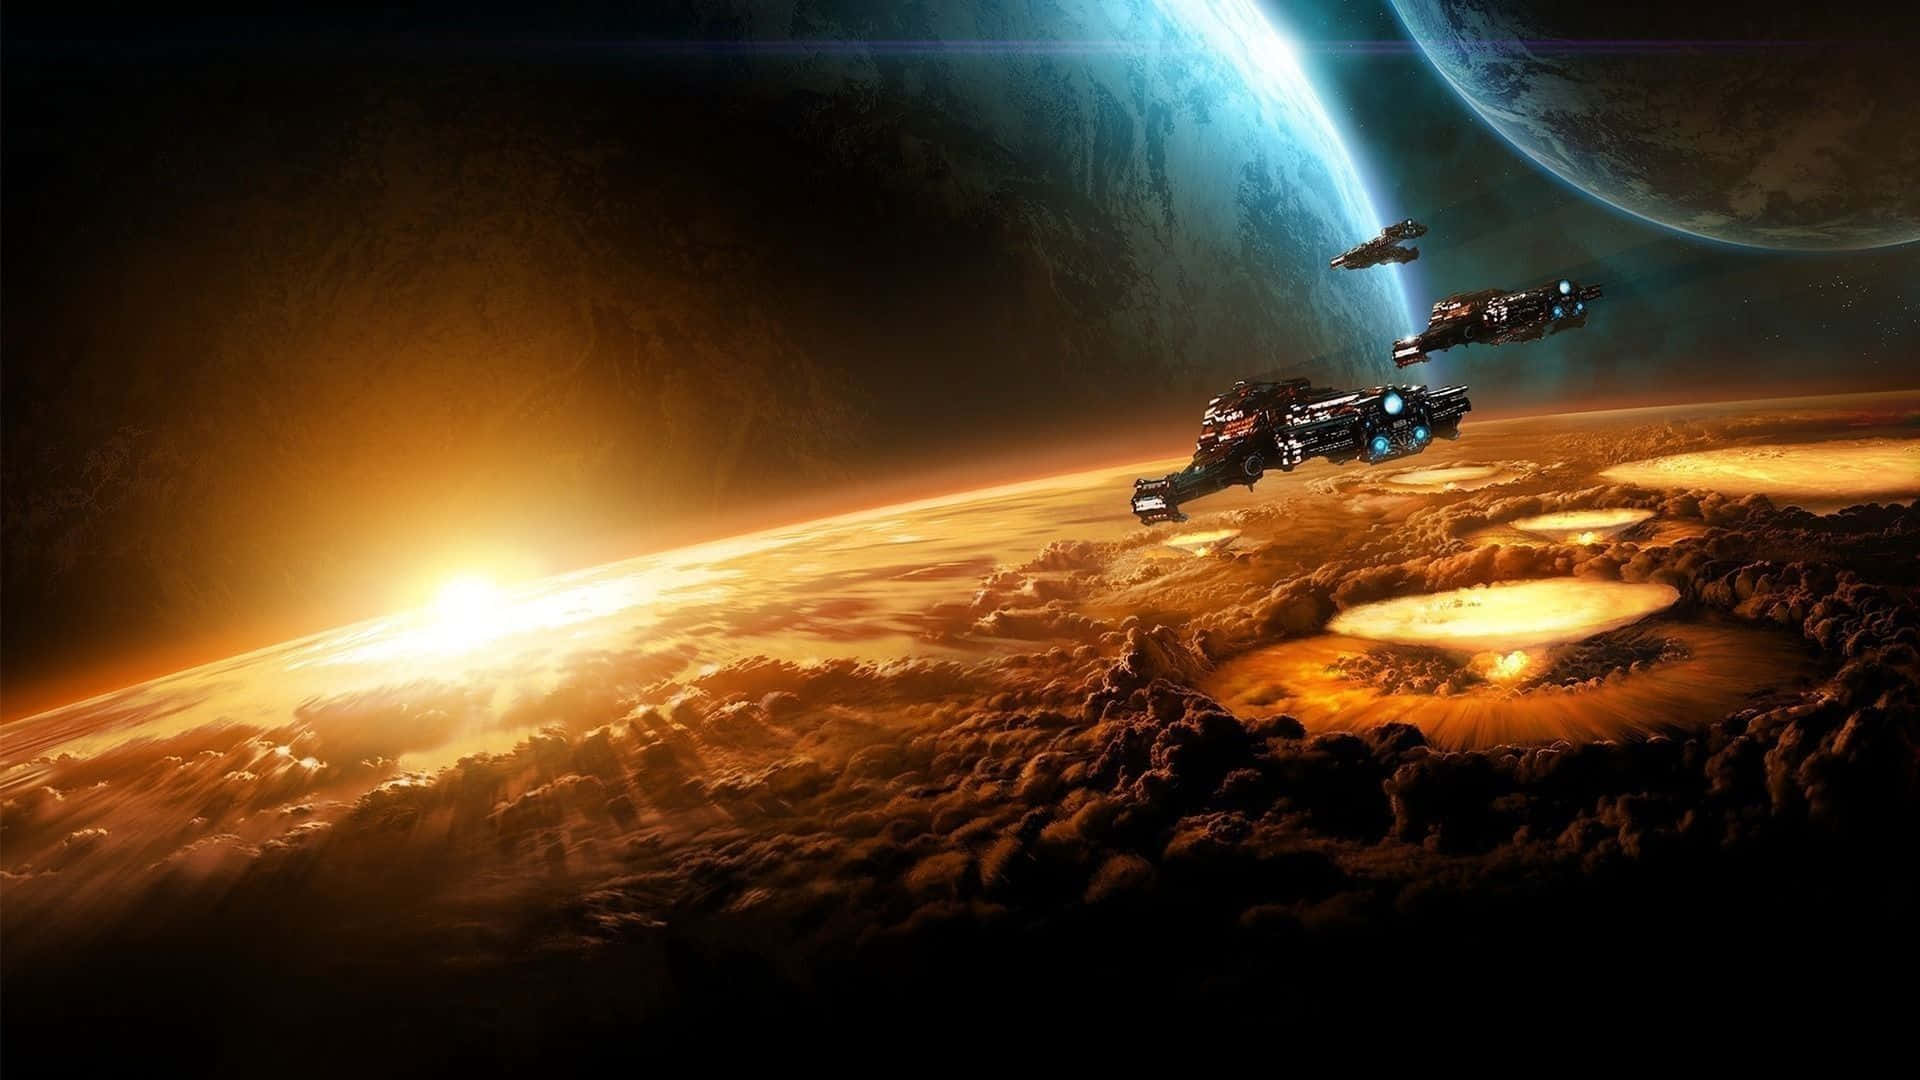 Unanave Espacial Futurista Volando A Través De Las Estrellas.